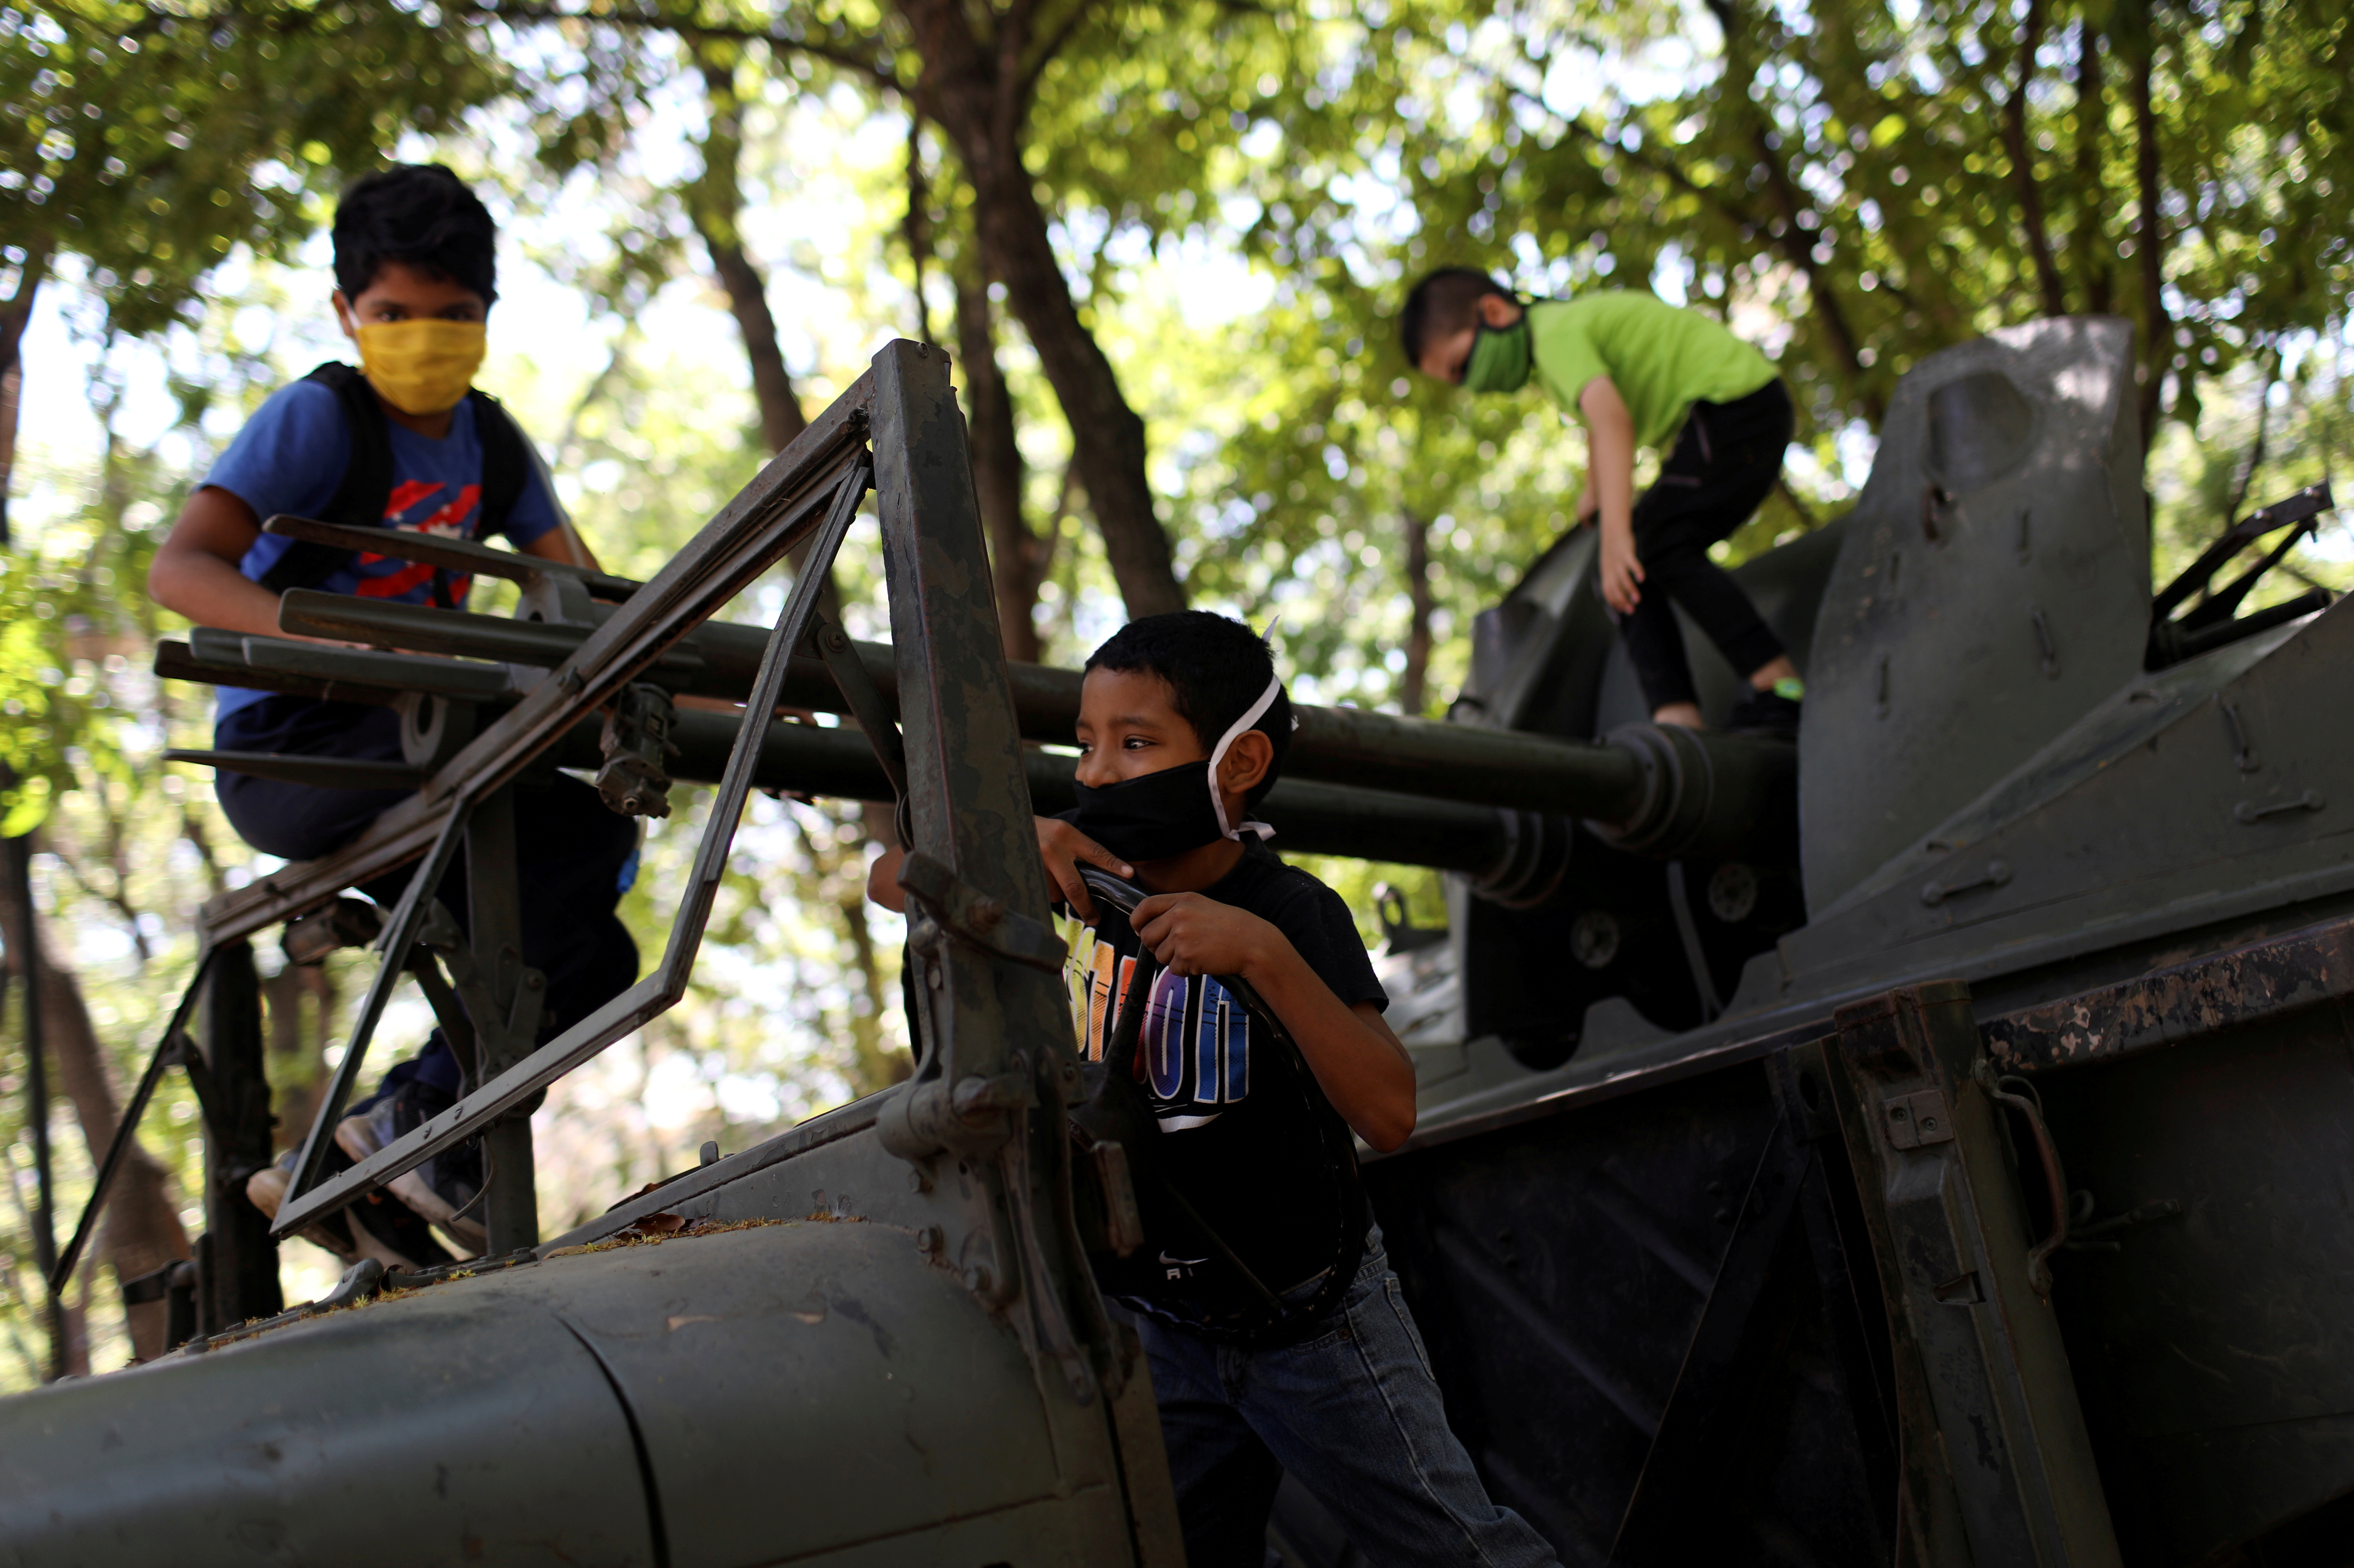 Niños venezolanos juegan en un tanque no operativo en el bulevar Los Proceres en Caracas durante el permiso de 8 horas para que los menores de 14 años salgan al exterior el 26 de abril de 2020 (REUTERS/Manaure Quintero)